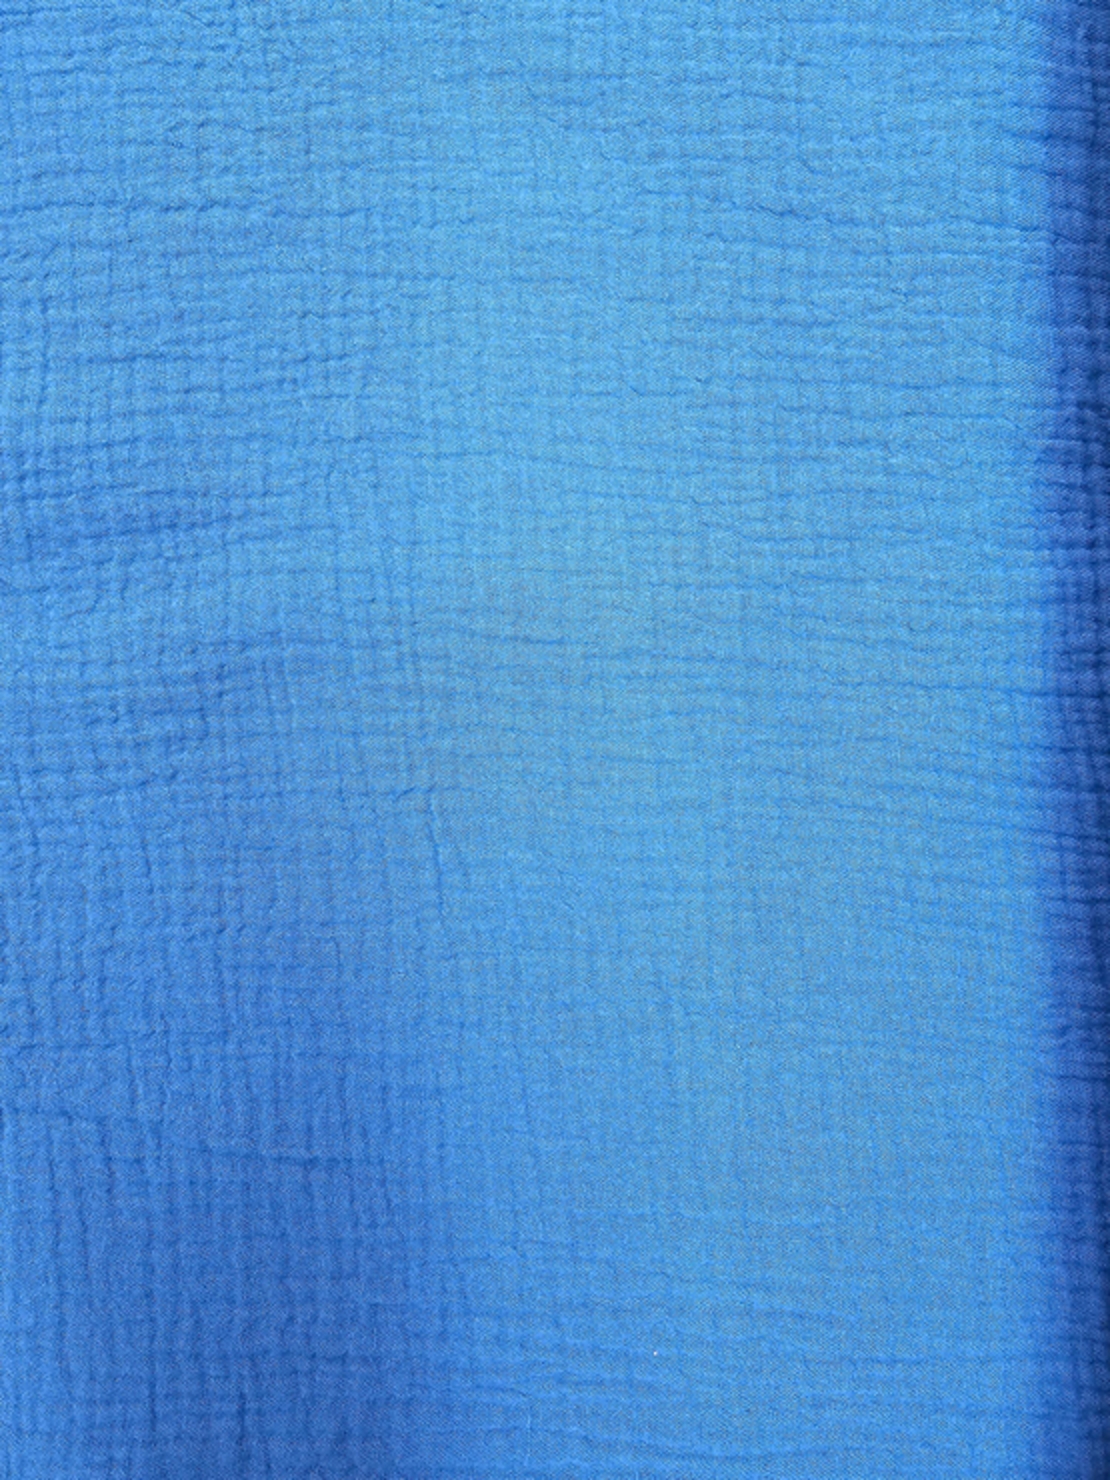 אריג דאבל טטרה צבע כחול רויאל